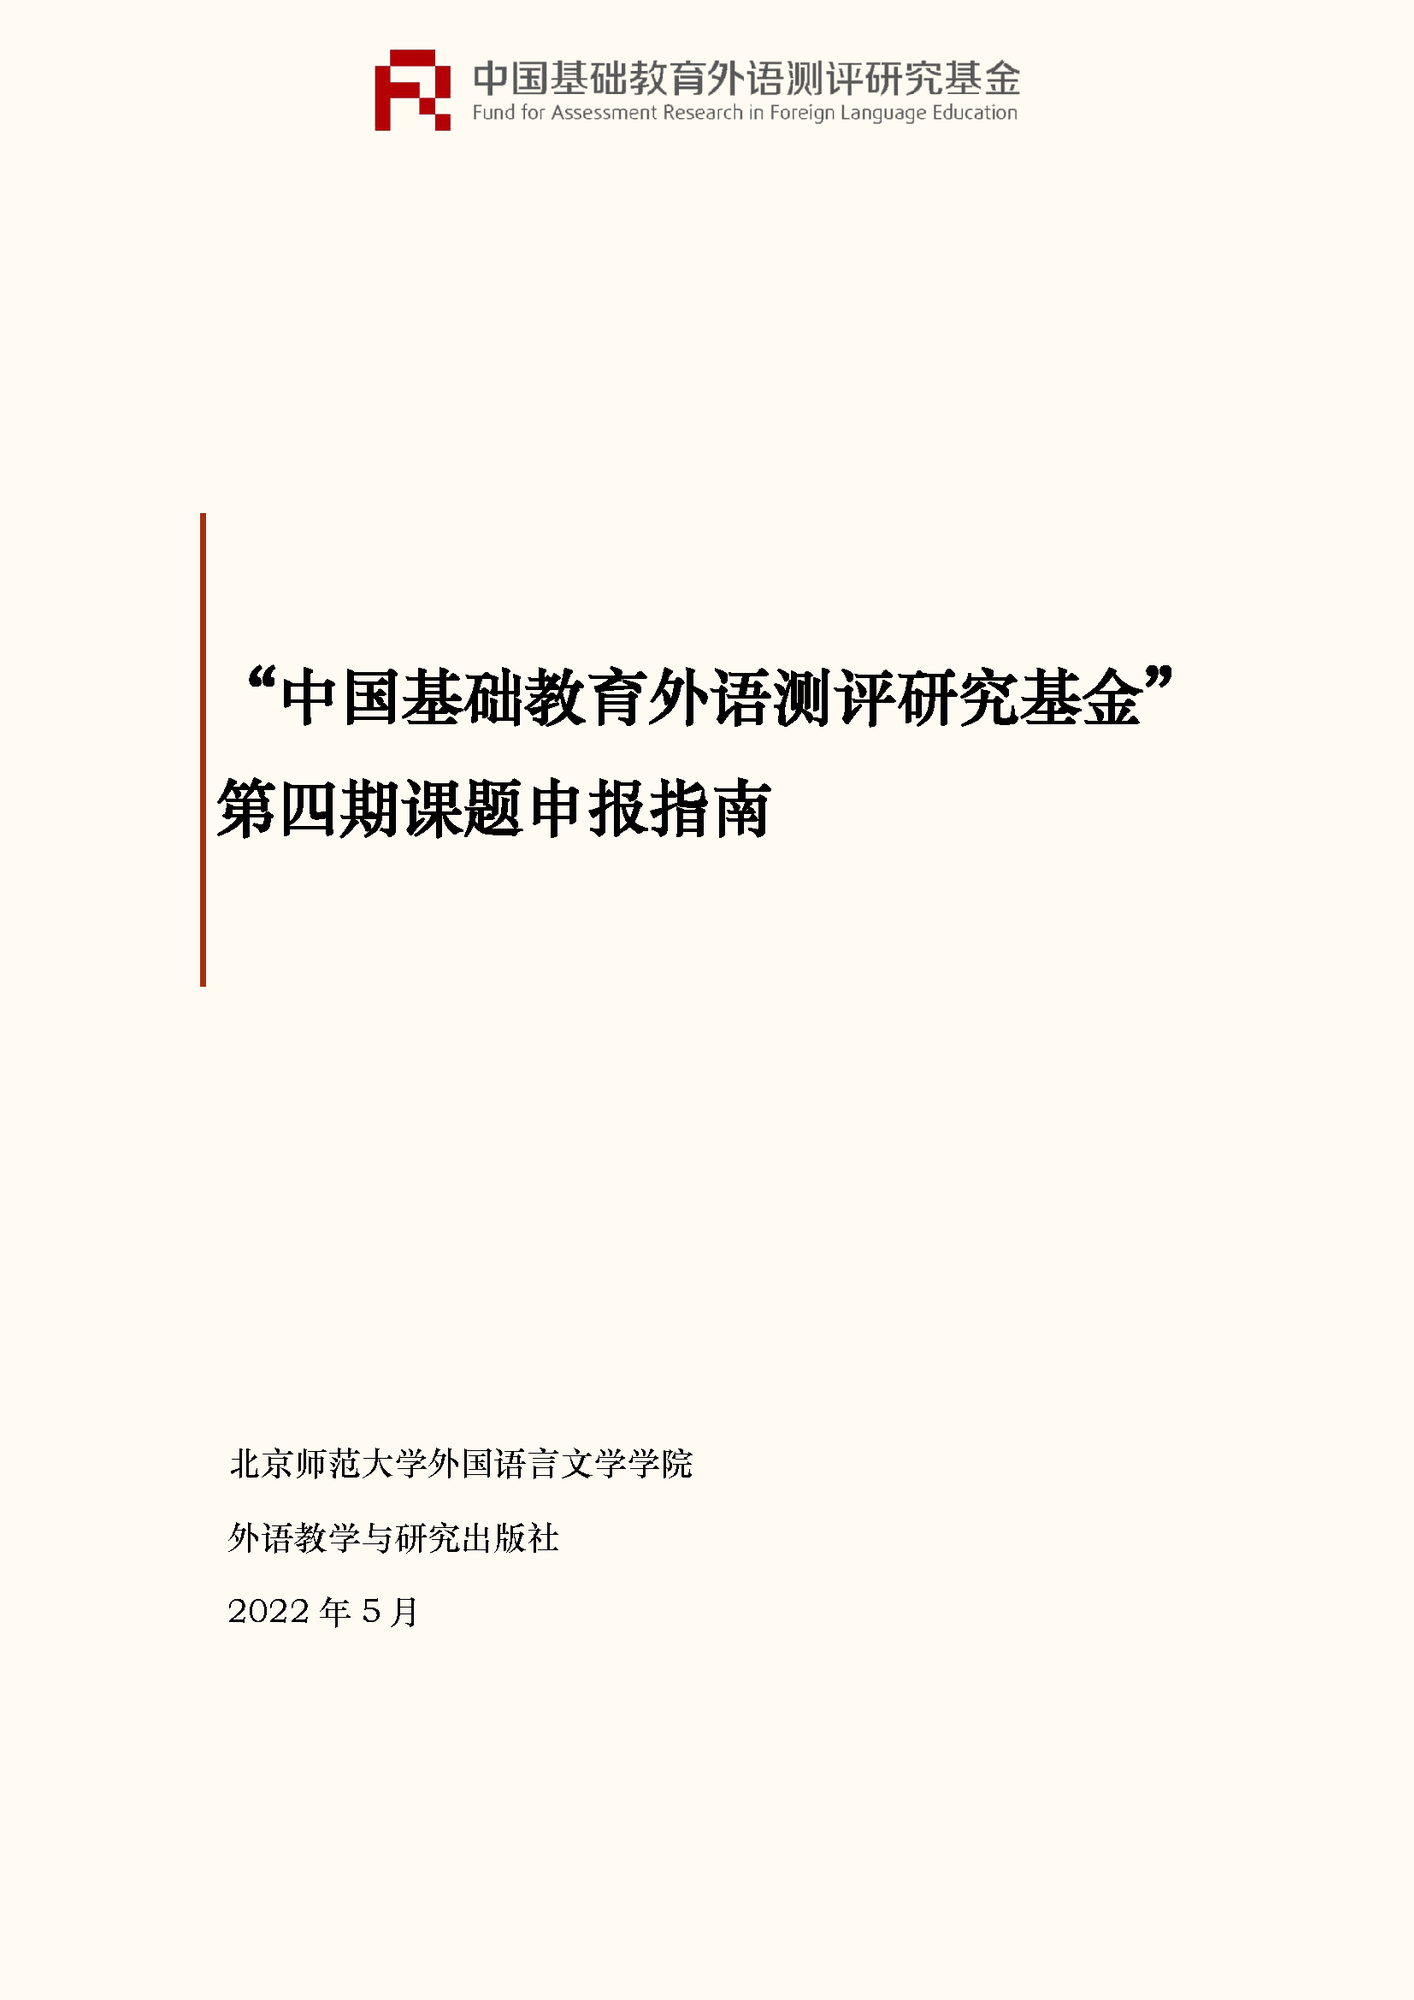 ”中国基础教育外语测评研究基金“项目第四期课题申报指南_页面_01